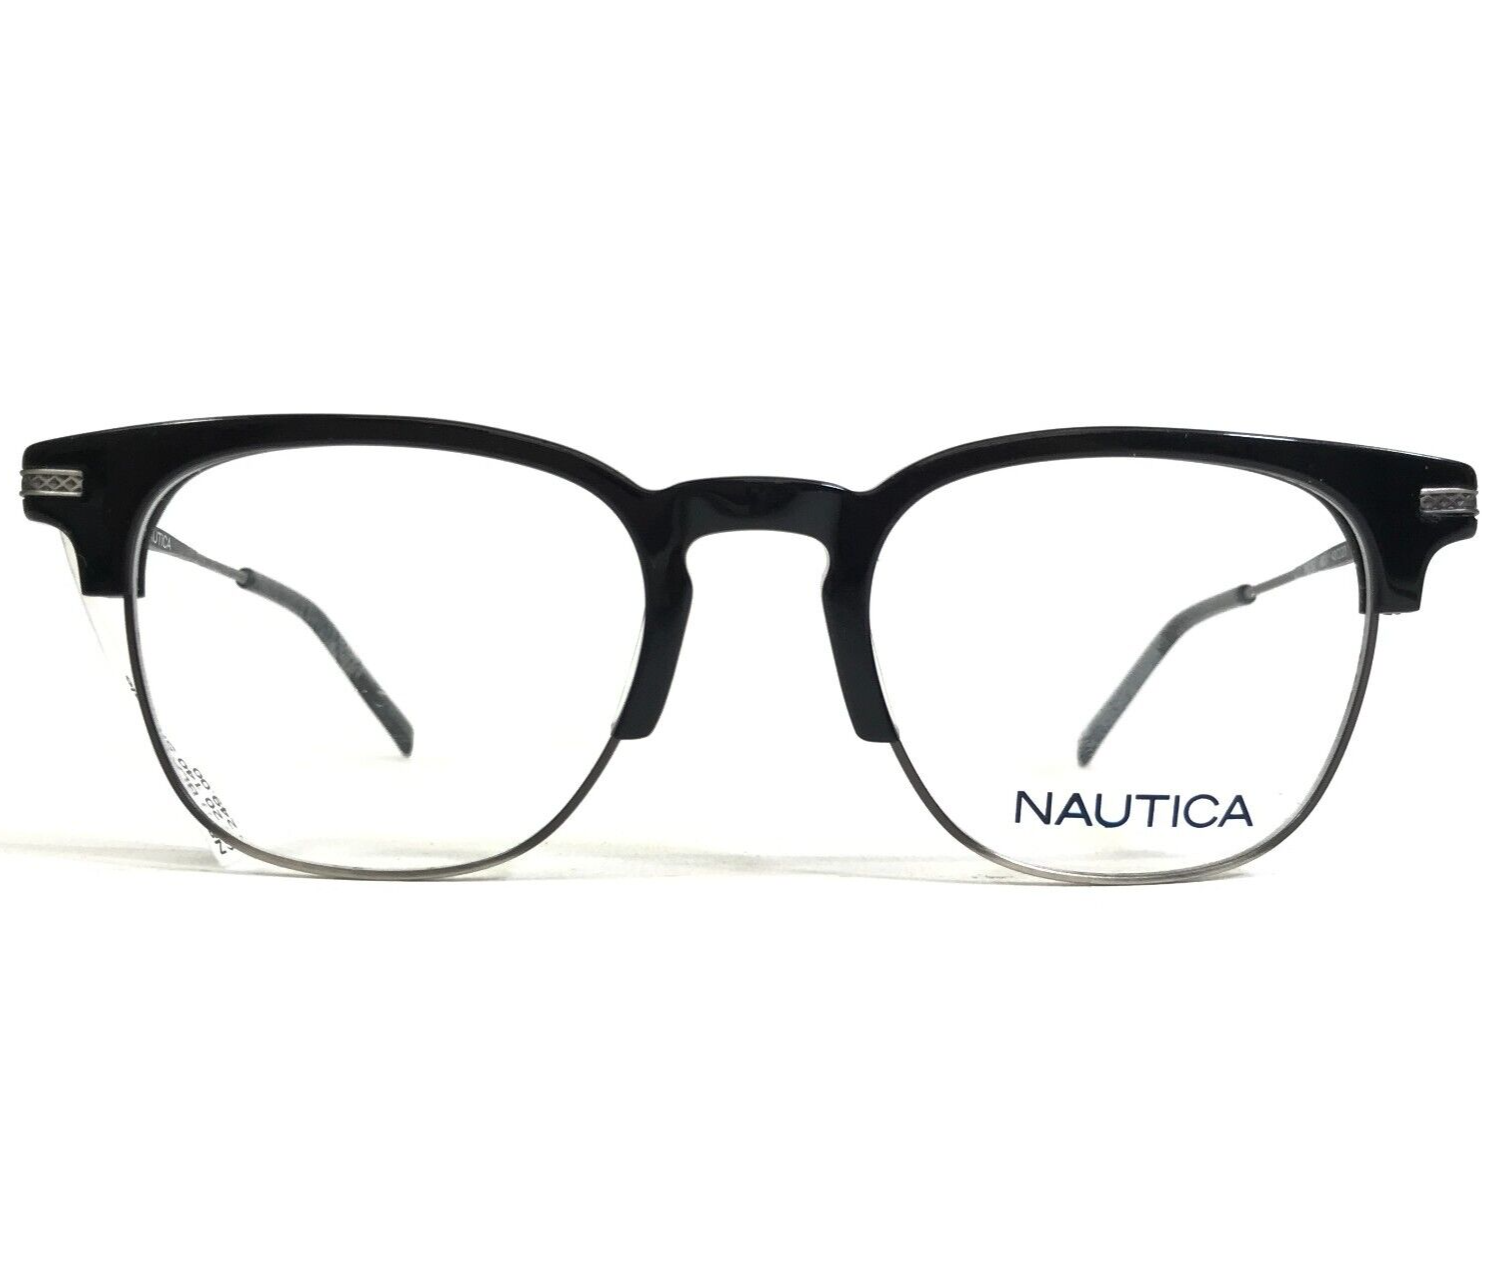 Primary image for Nautica Eyeglasses Frames N8161 001 Black Gray Gunmetal Full Rim 48-20-140